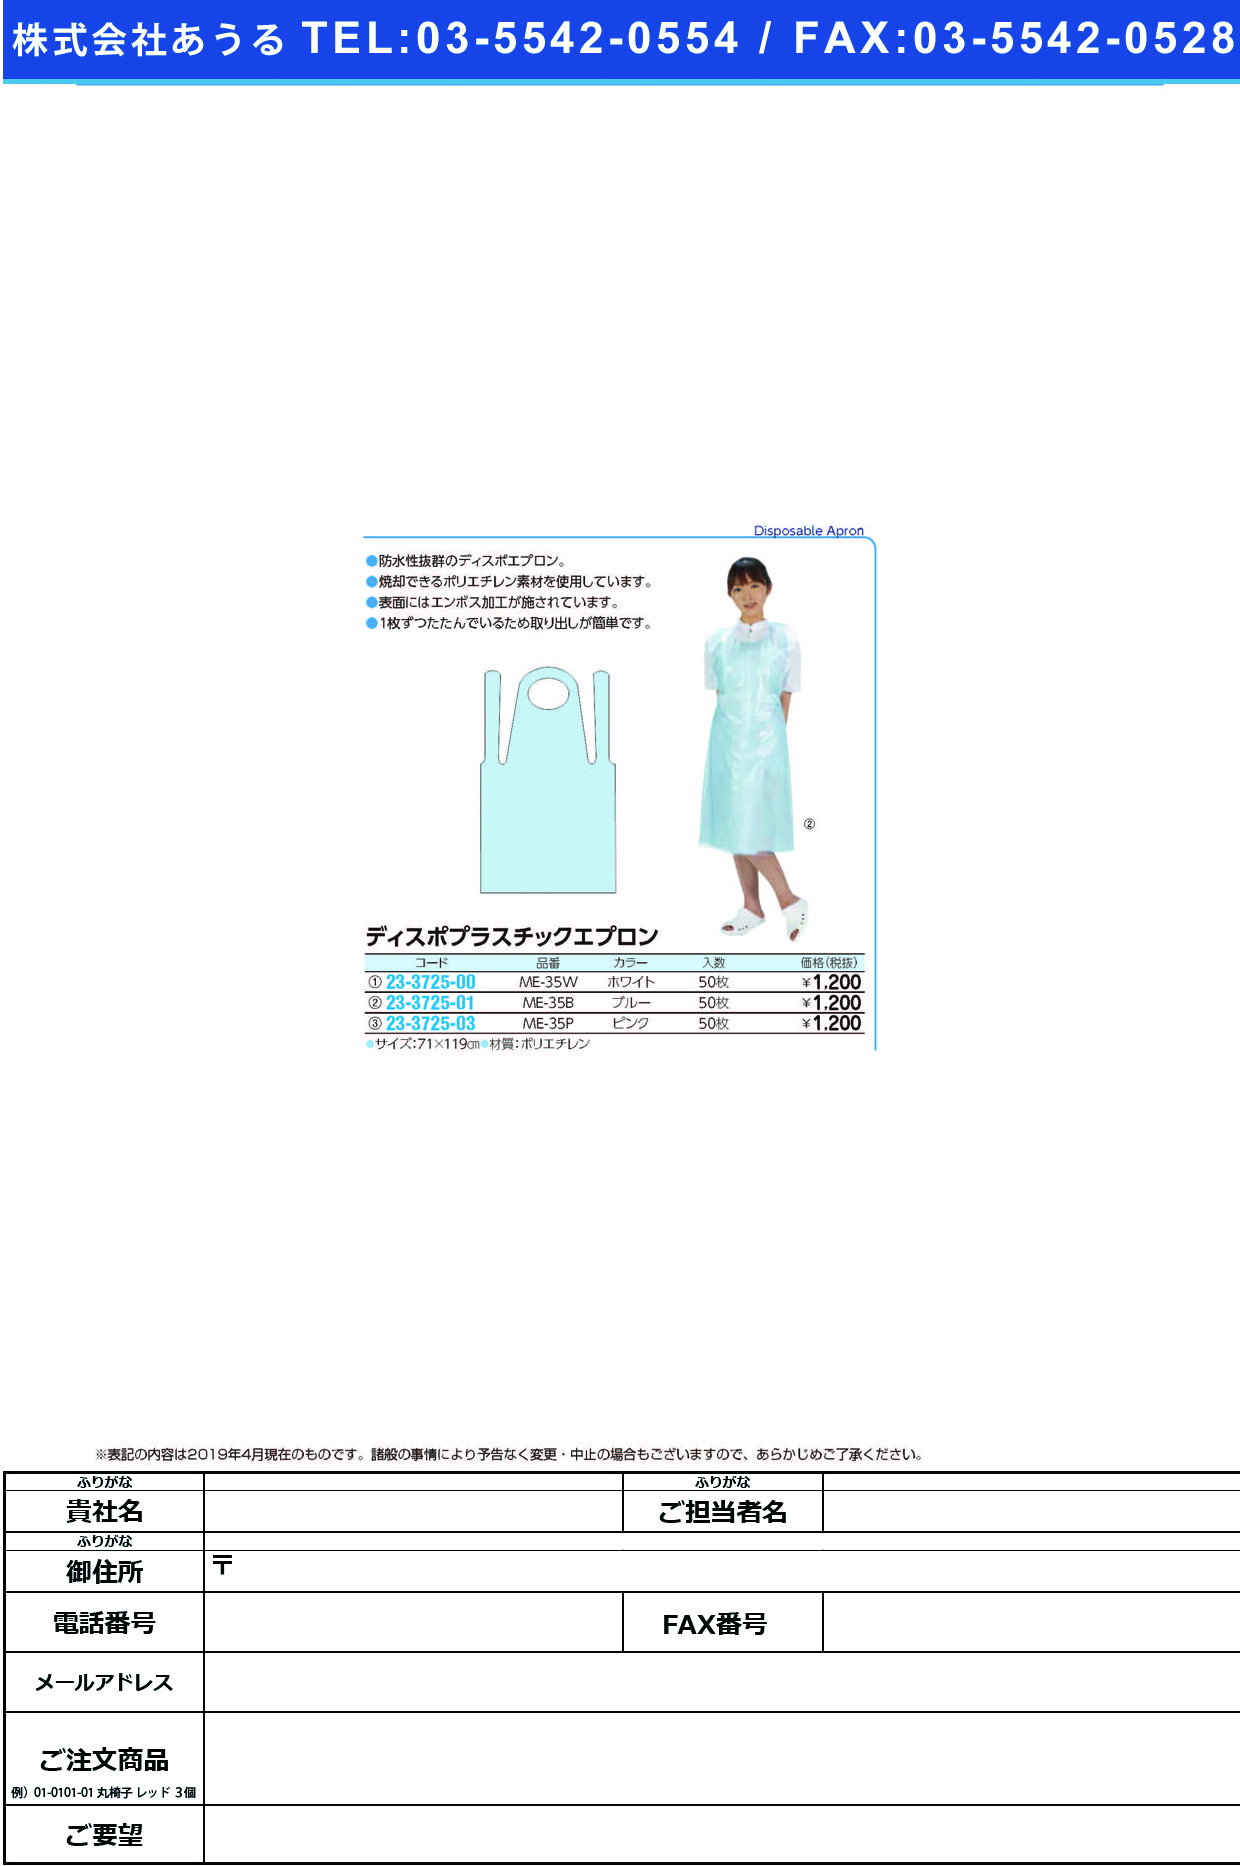 (23-3725-01)ディスポプラスチックエプロン ME-35B(ﾌﾞﾙｰ)50ﾏｲｲﾘ ﾃﾞｨｽﾎﾟﾌﾟﾗｽﾁｯｸｴﾌﾟﾛﾝ【1箱単位】【2019年カタログ商品】